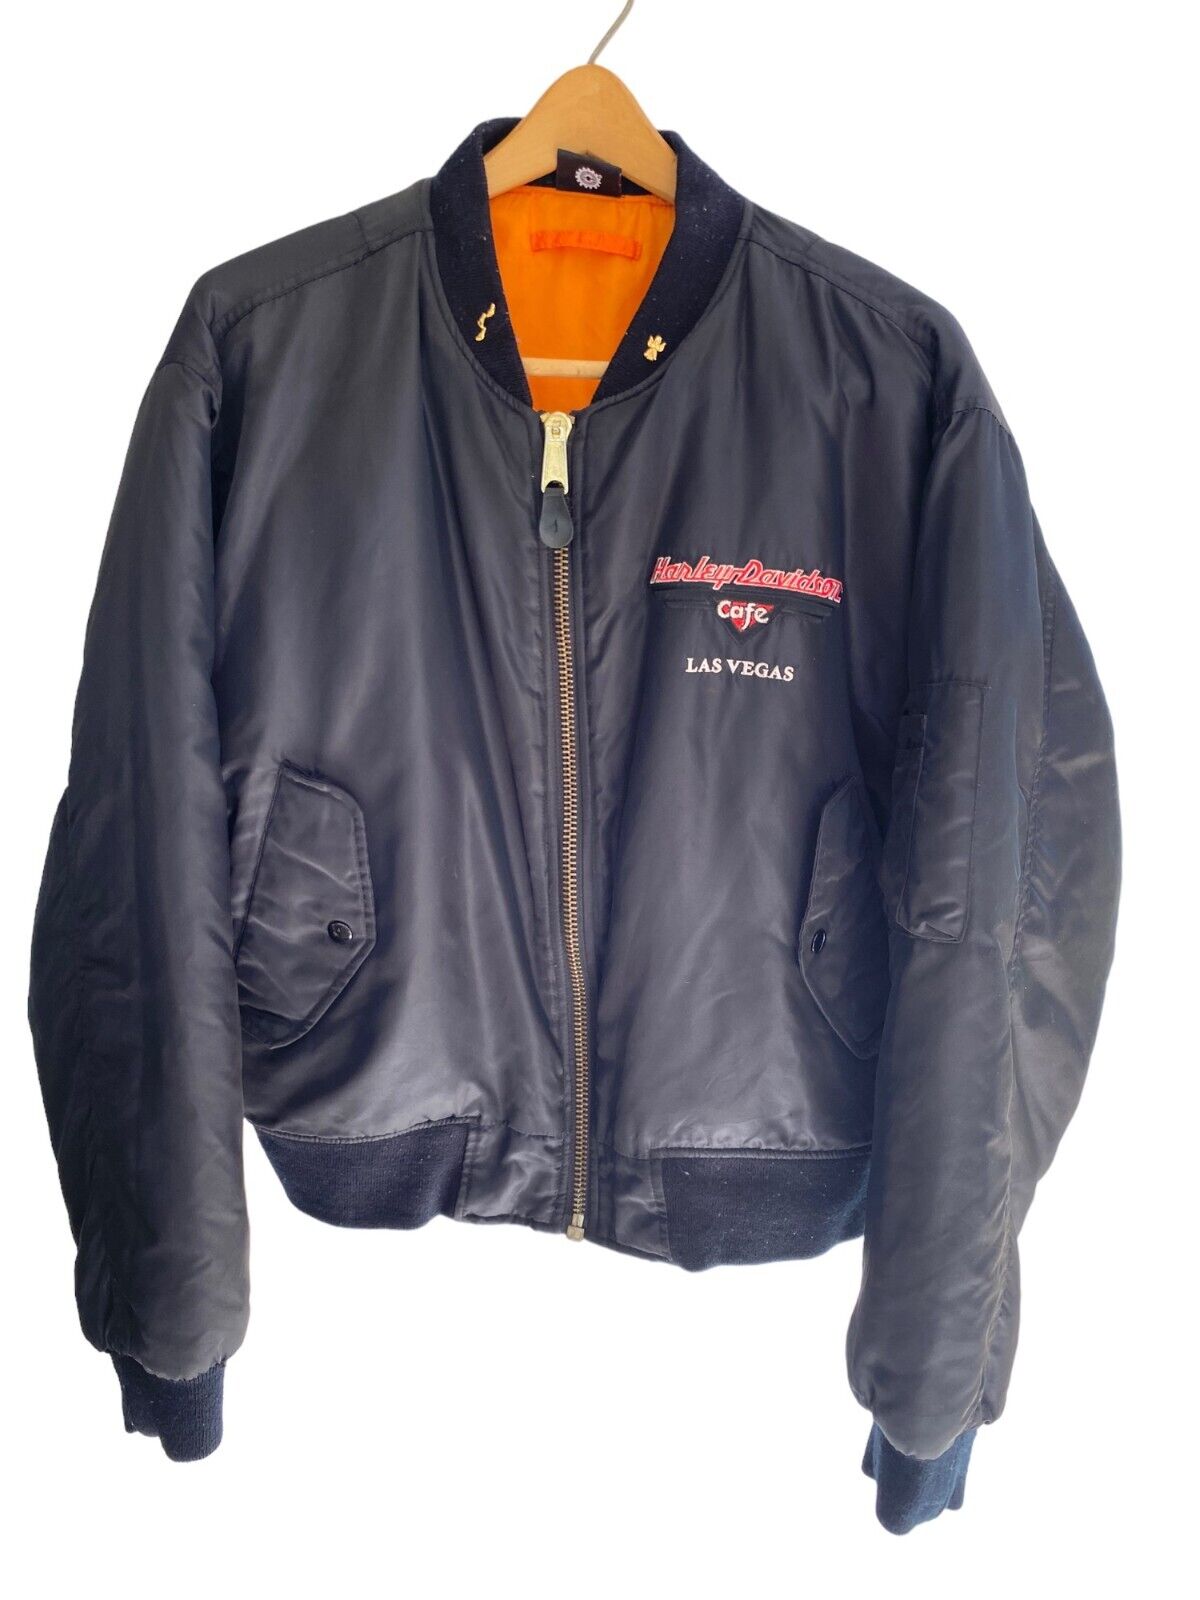 Harley Davidson Cafe Las Vegas Unisex Bomber Jacket Size XL